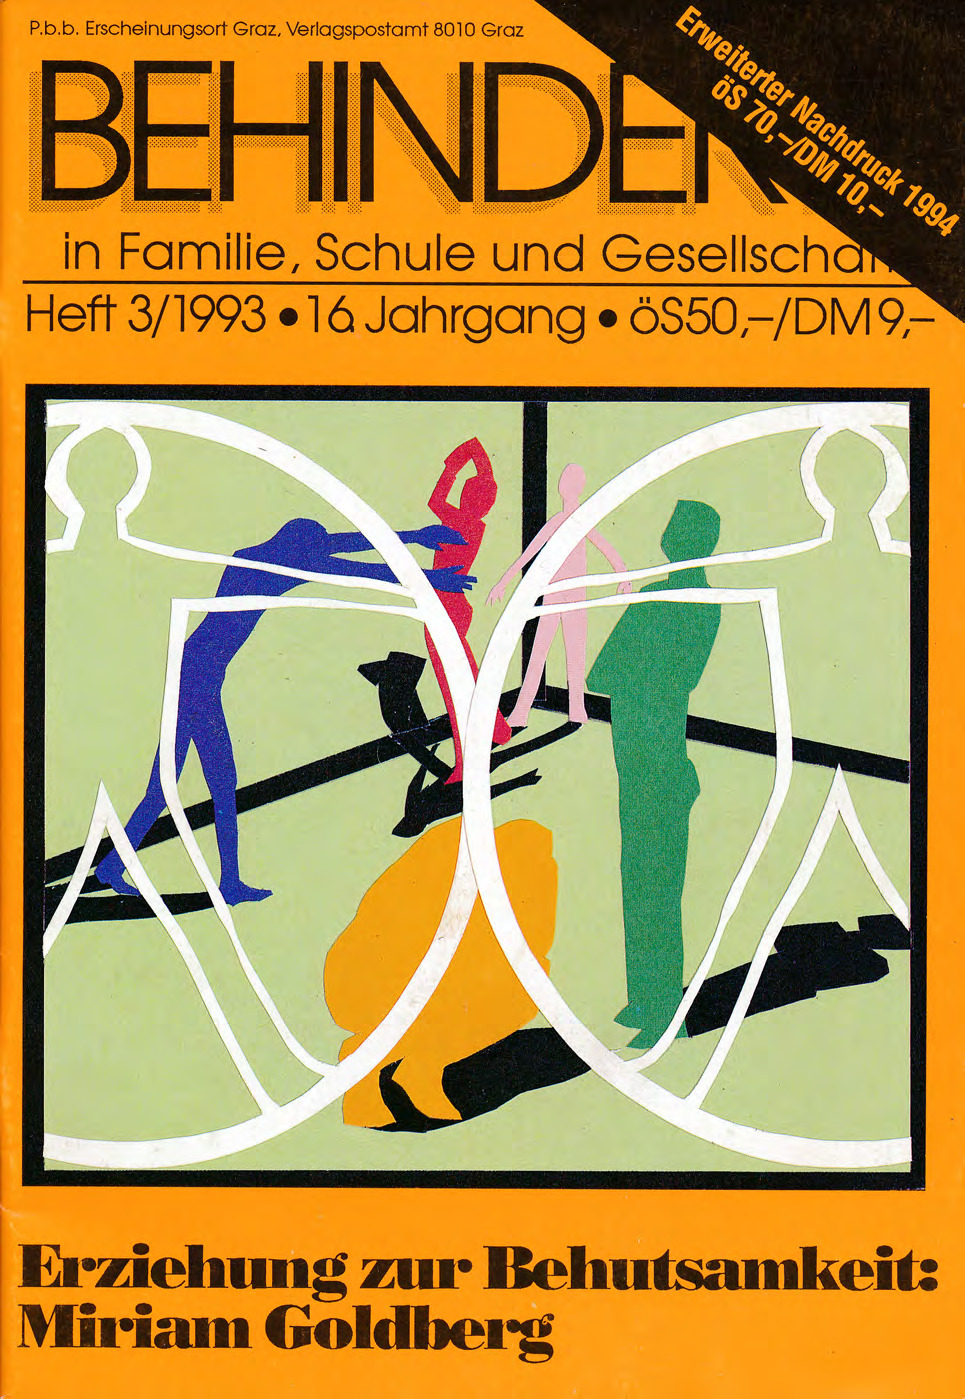 Titelbild der Zeitschrift BEHINDERTE MENSCHEN, Ausgabe 3/1993 "Erziehung zur Behutsamkeit: Mariam Goldberg"